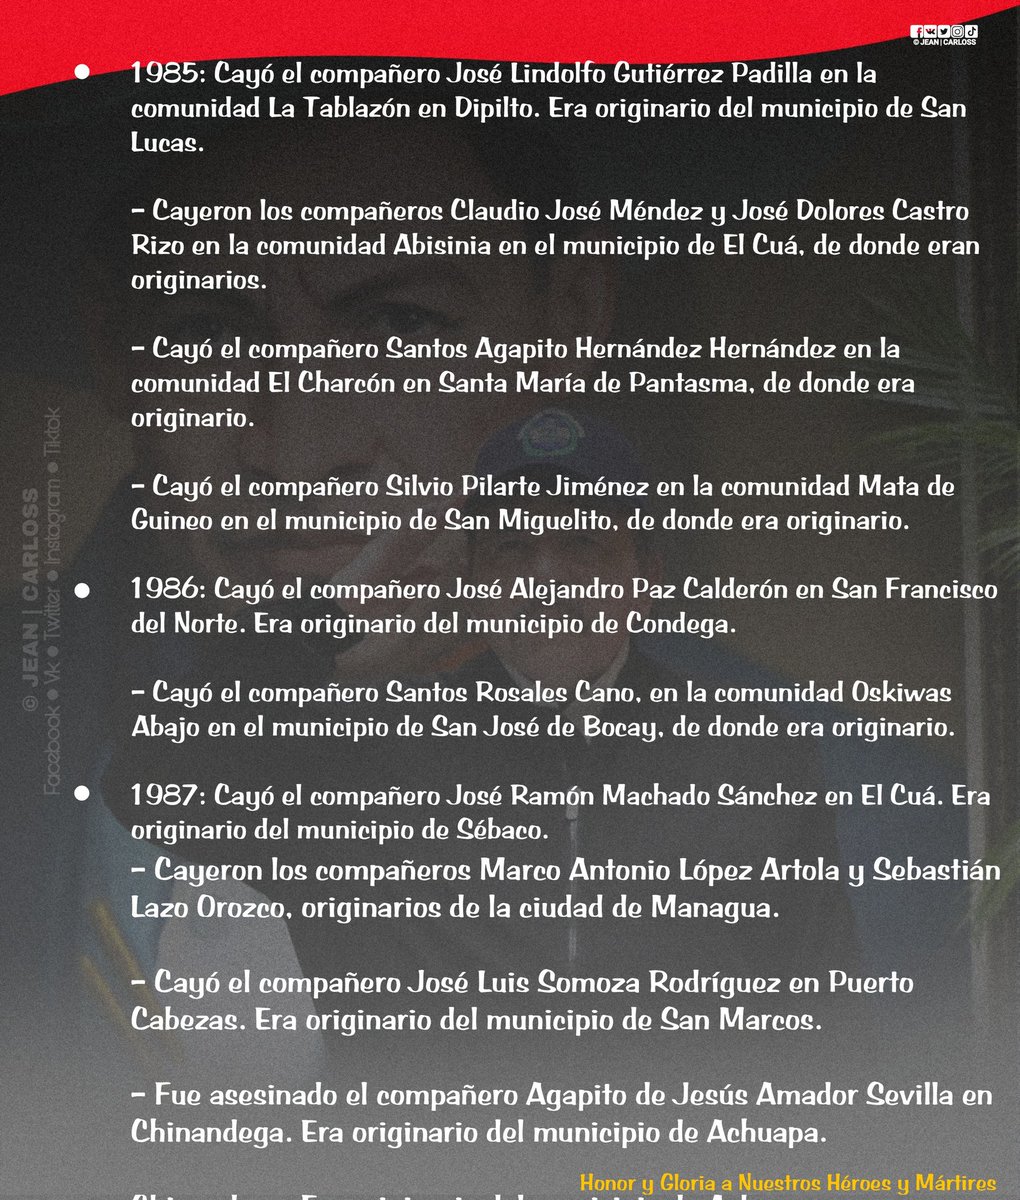 #UnDiaComoHoy || Efemérides Revolucionarias del día de hoy 2 de Junio.🔴⚫✊🇳🇮

#Nicaragua 
#LaPazNuestraVictoria   
#ComunicadoresJinotegaNorte